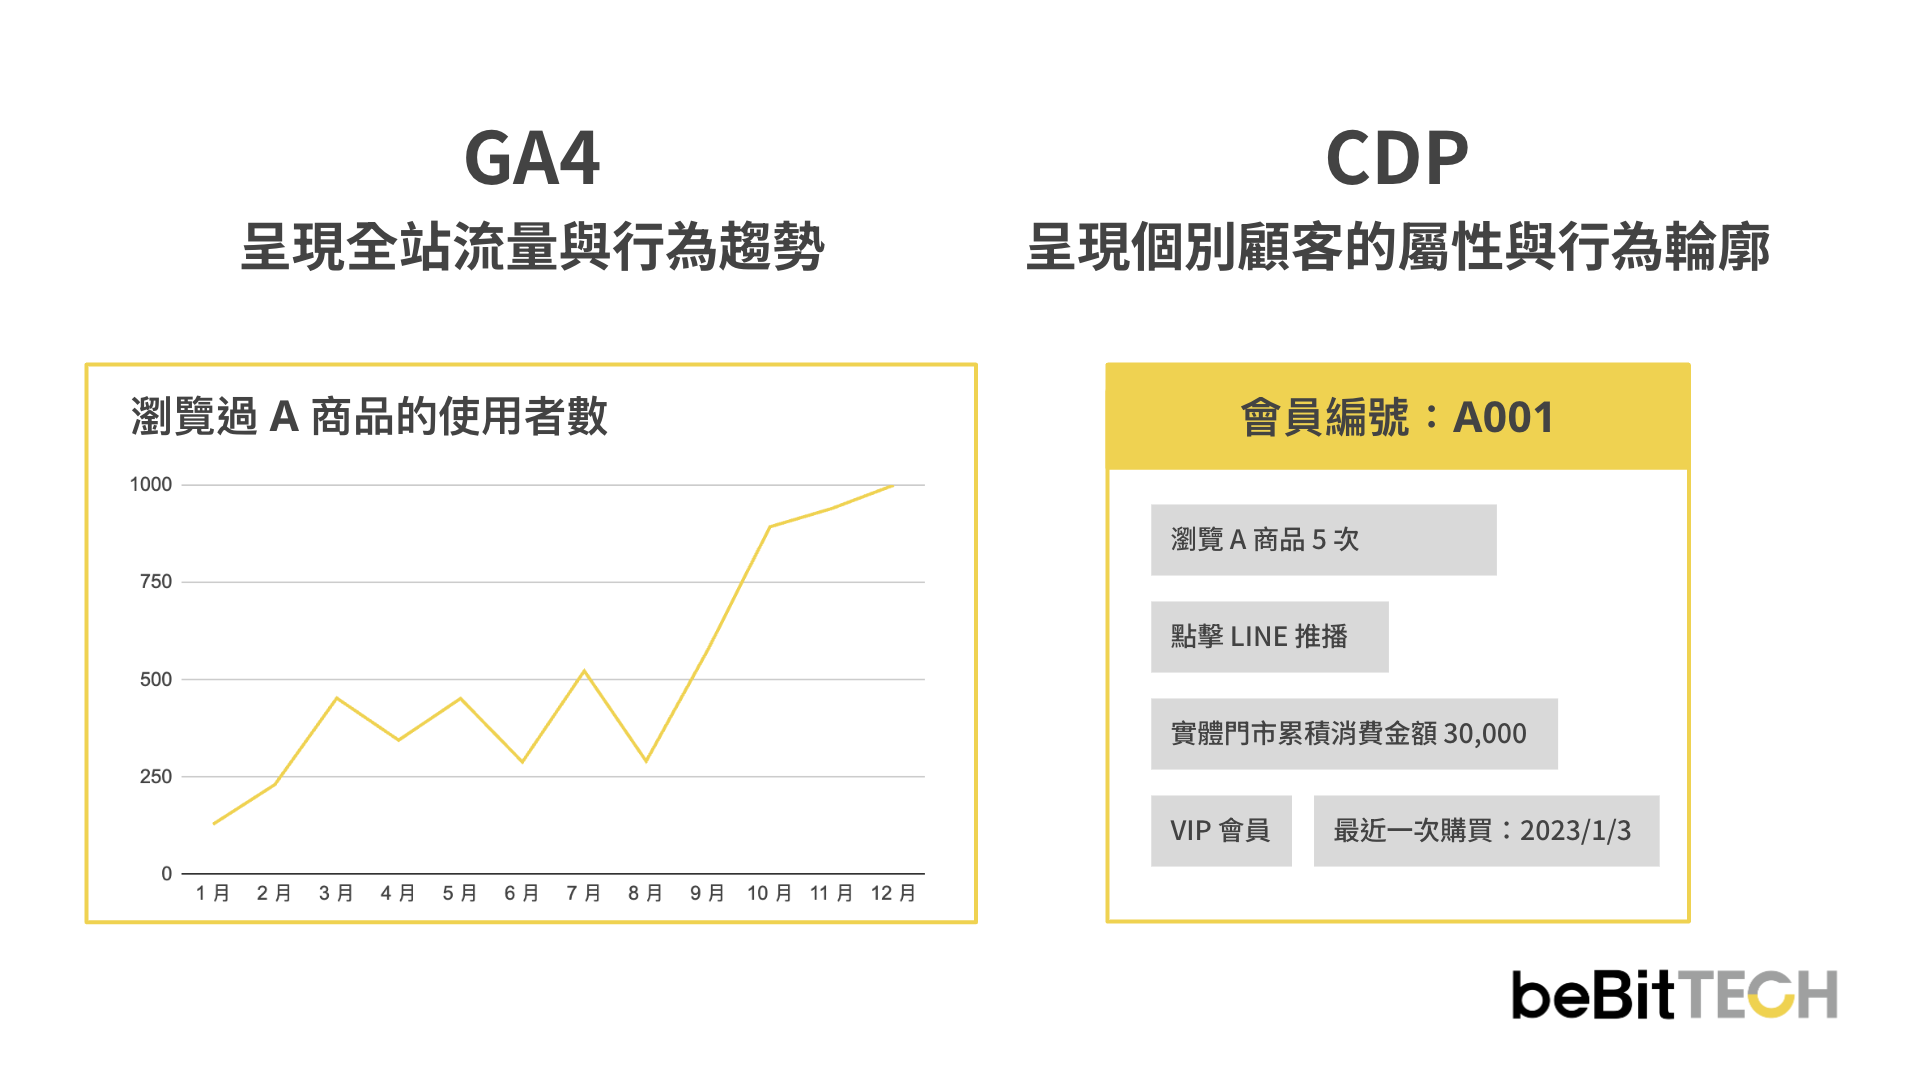 ga4-cdp-comparison-5